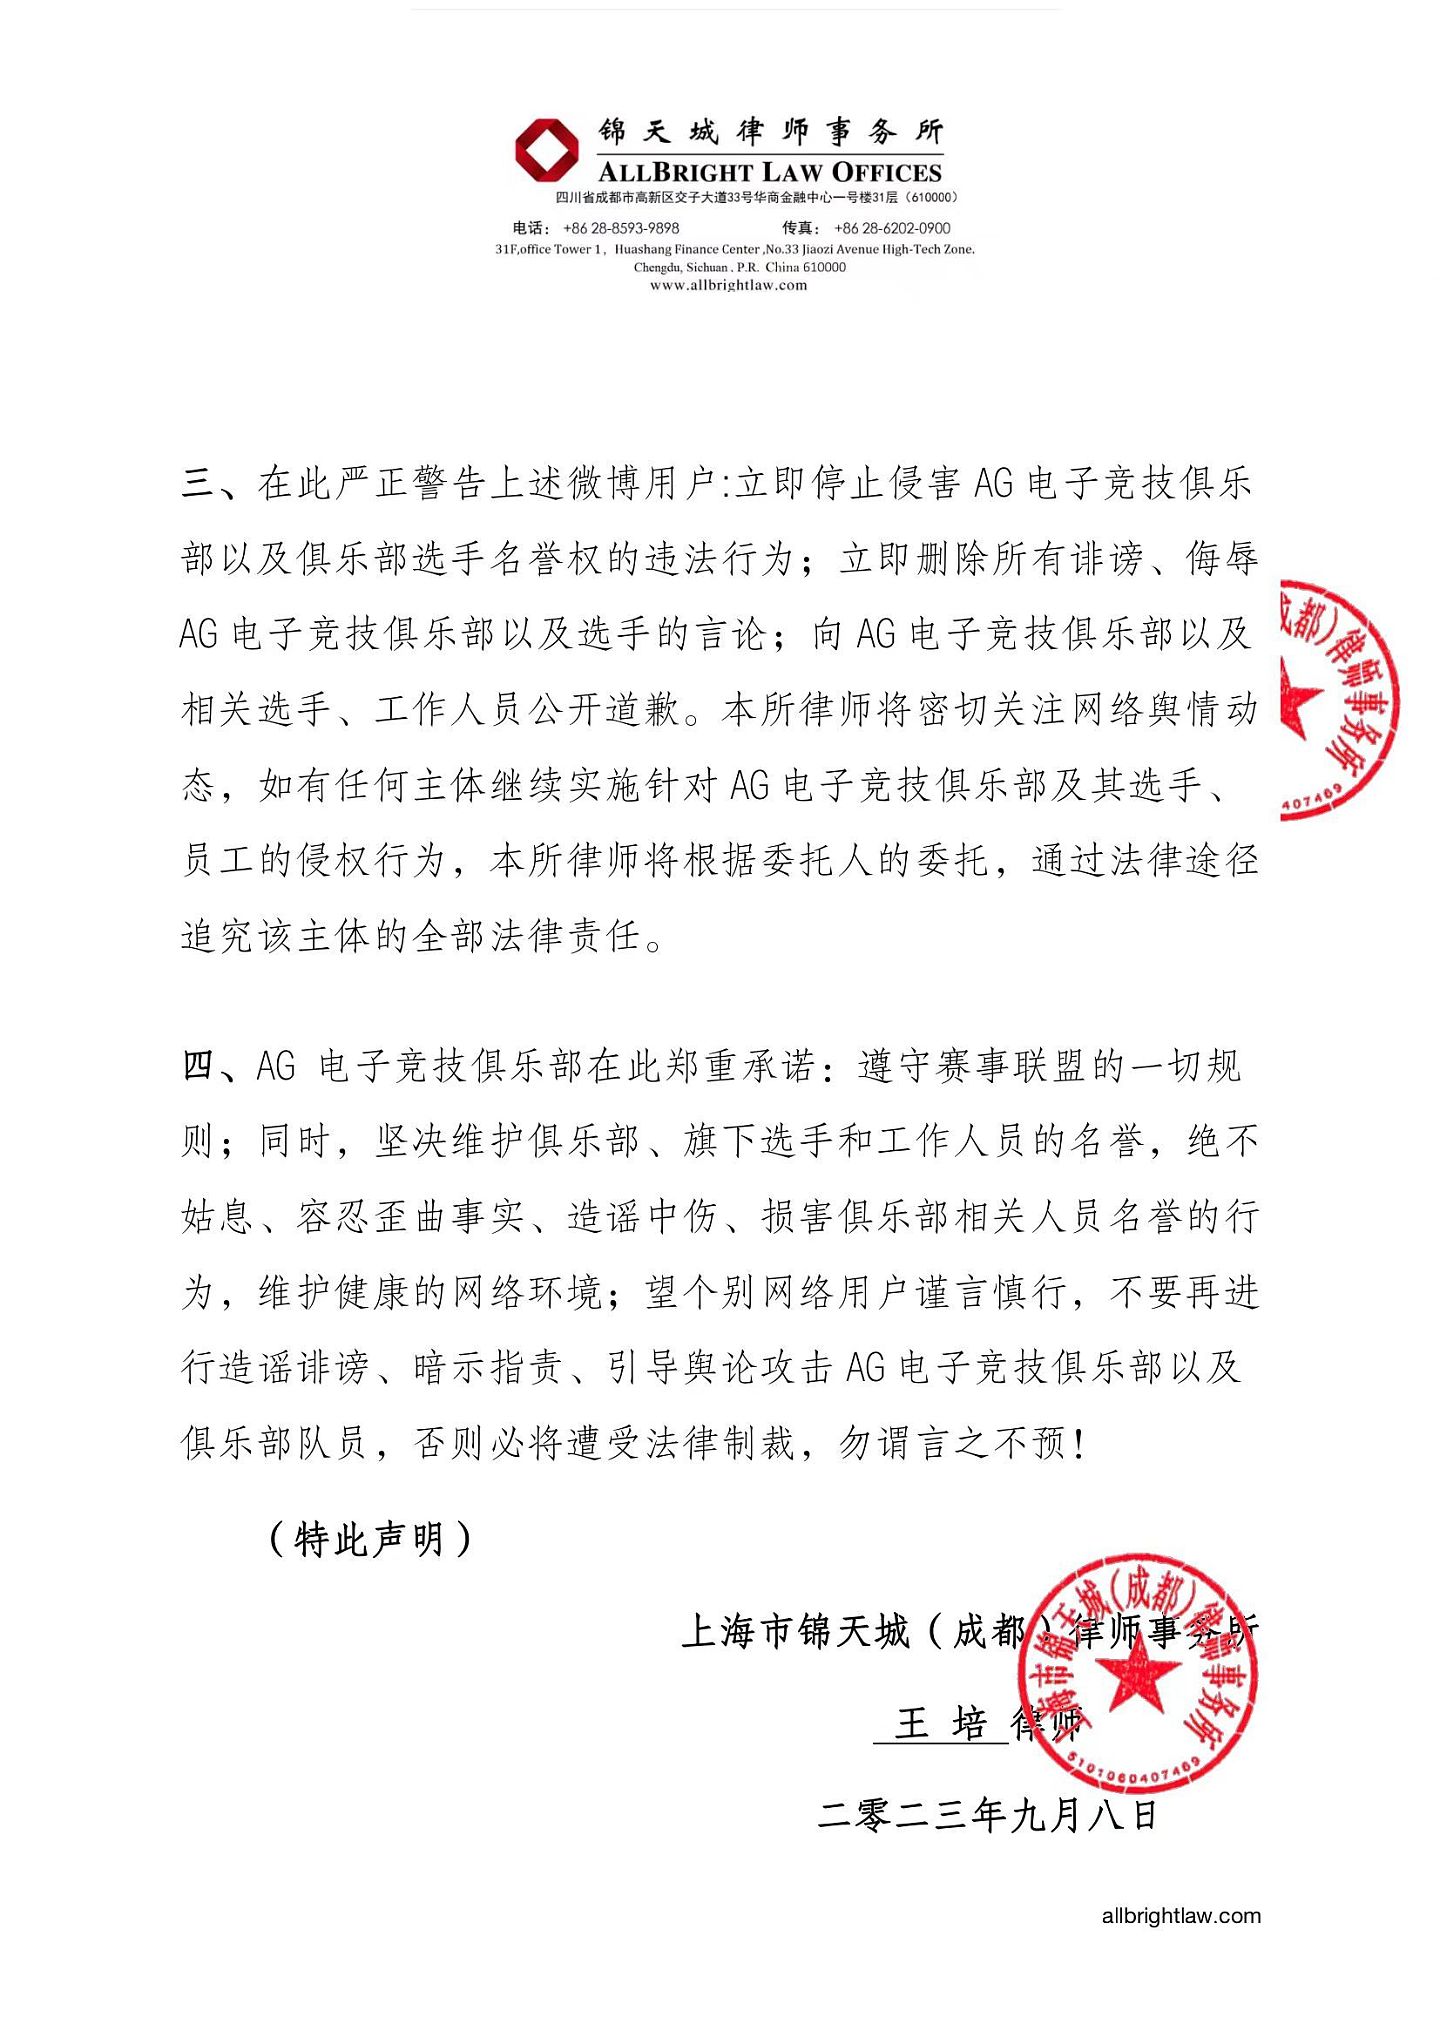 成都AG俱乐部发布律师声明：立即停止侵害AG俱乐部与选手名誉的行为 - 2